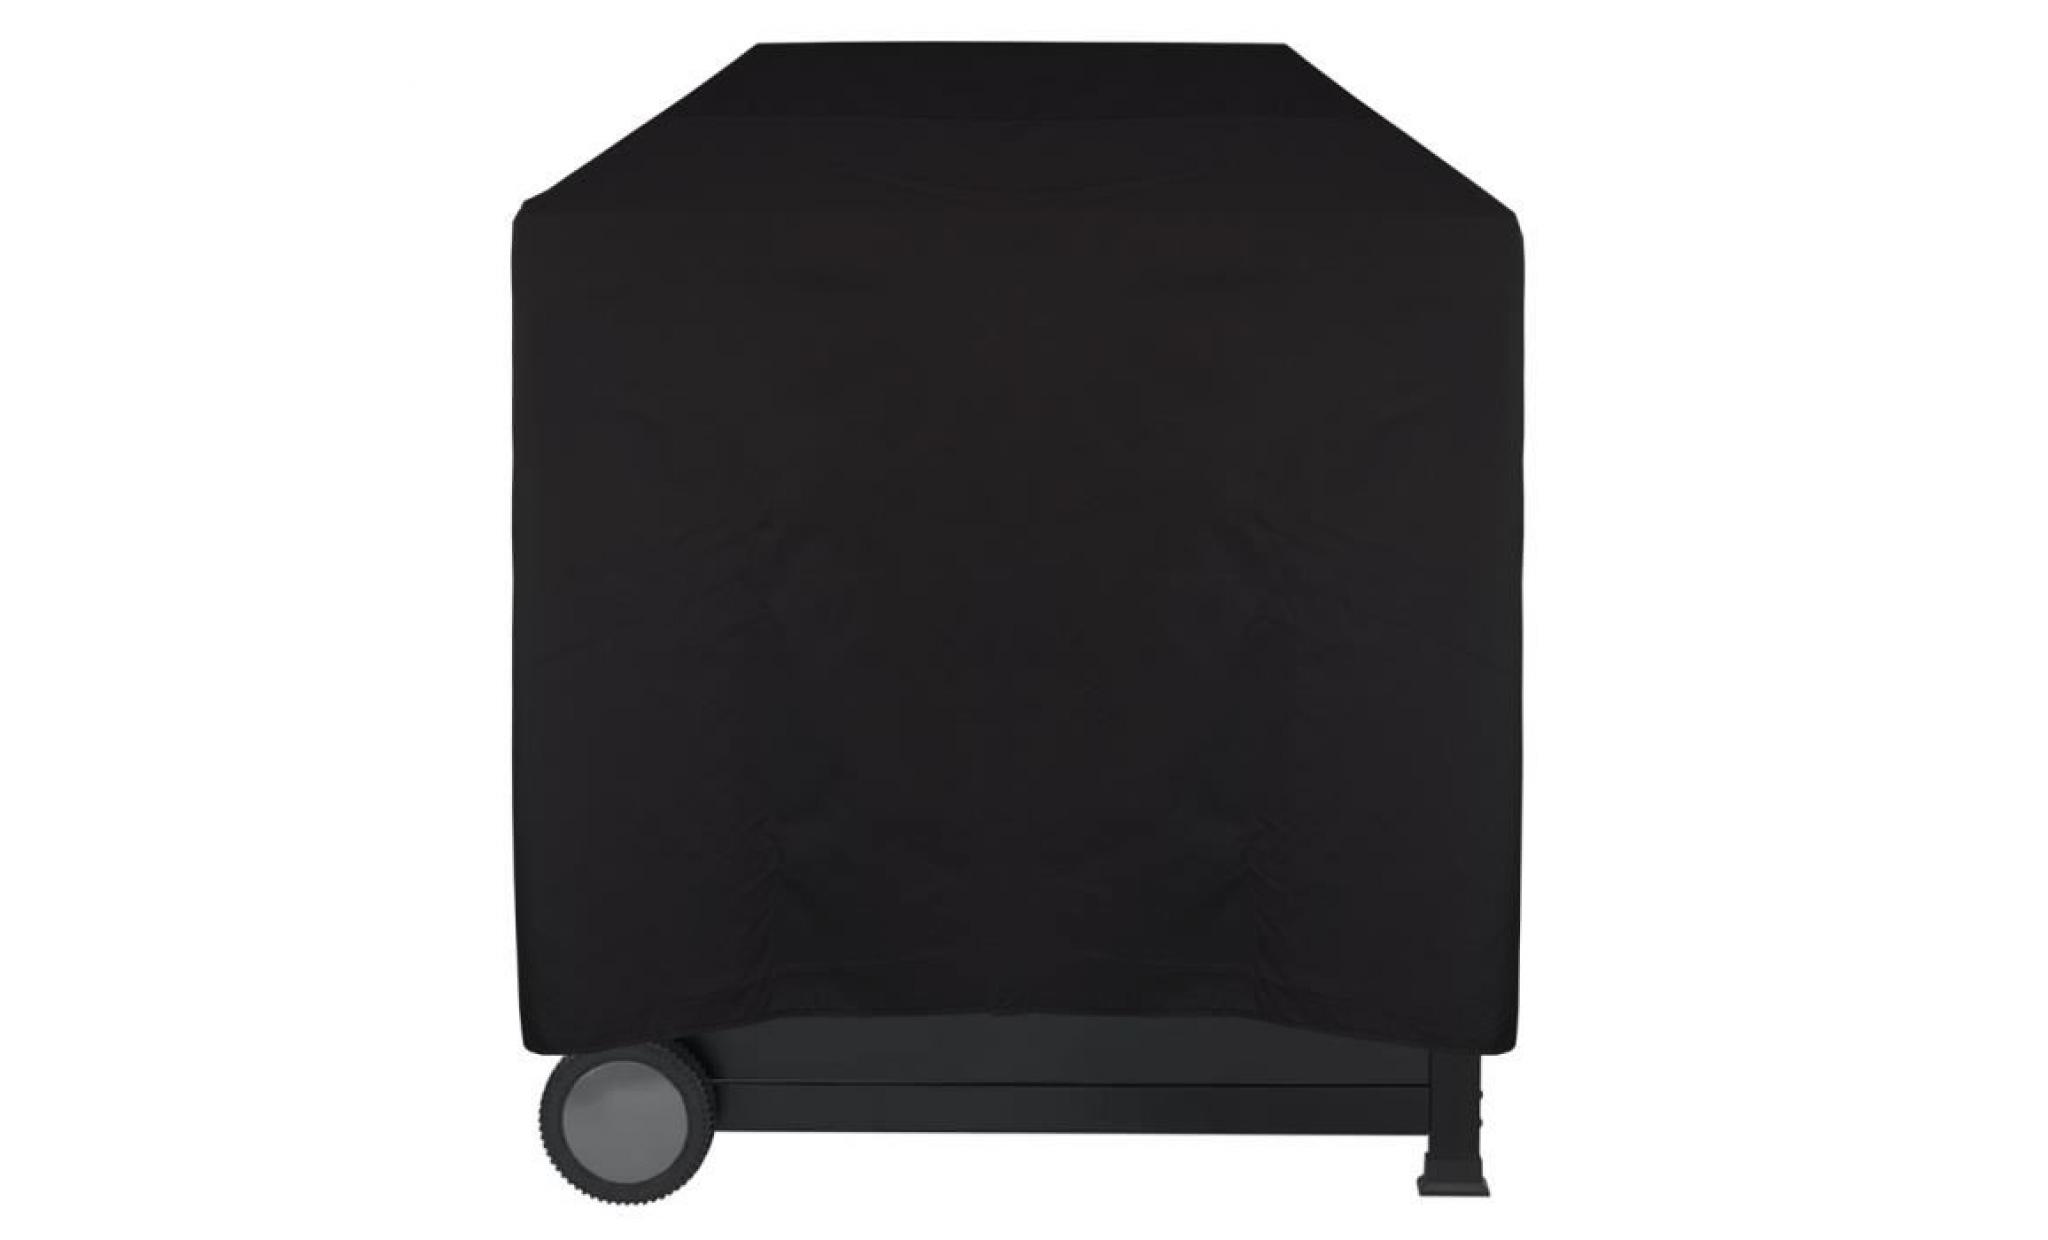 housse pour barbecue imperméable lounge noir, xl 158 x 78 x 120 cm   protège contre la pluie, la saleté et les rayons du soleil